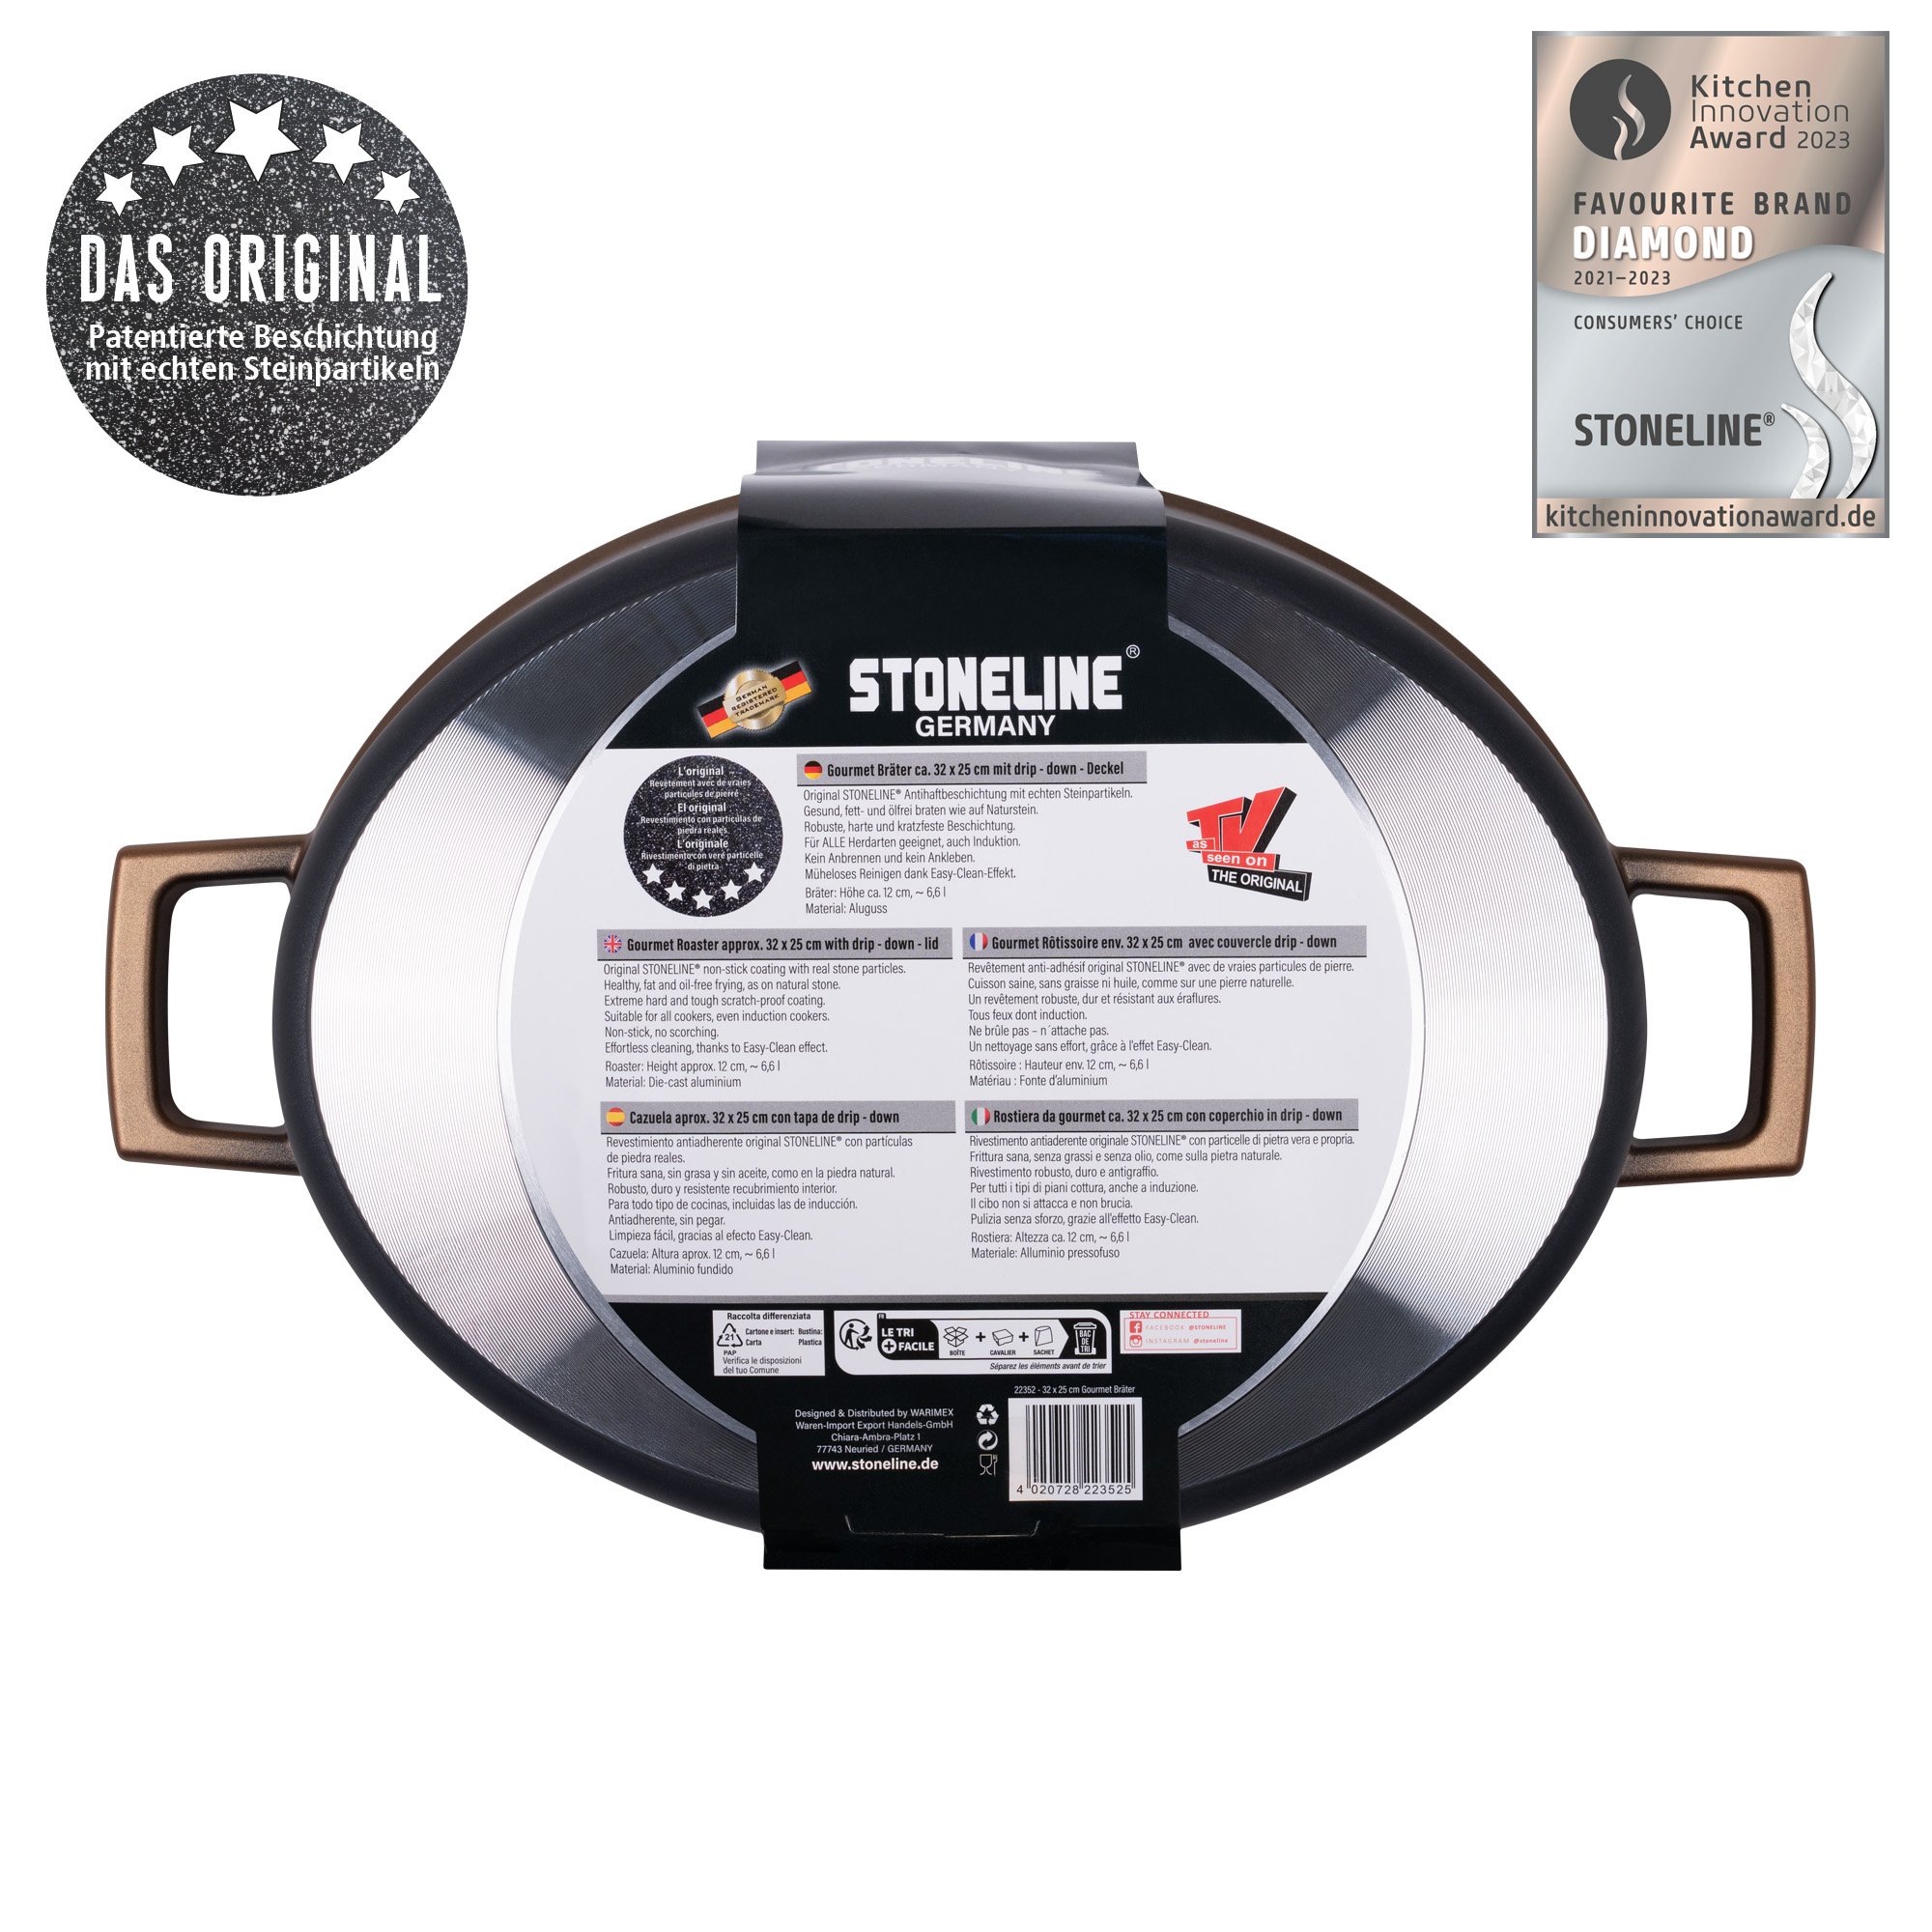 STONELINE® Roségold Gourmet asador 32x25 cm con tapa, apto para horno e inducción, antiadherente